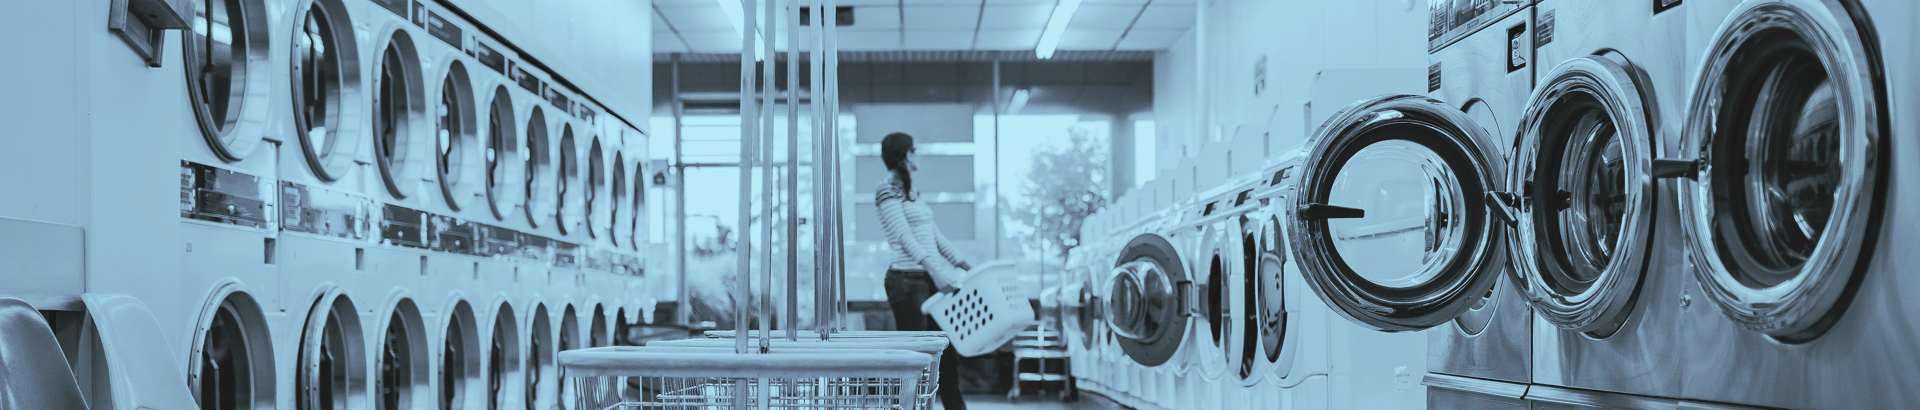 Suurim mainega ettevõte PESULUX OÜ, maineskoor 2940, aktiivseid äriseoseid 2. Tegutseb peamiselt valdkonnas: Tekstiilitoodete pesu ja keemiline puhastus.